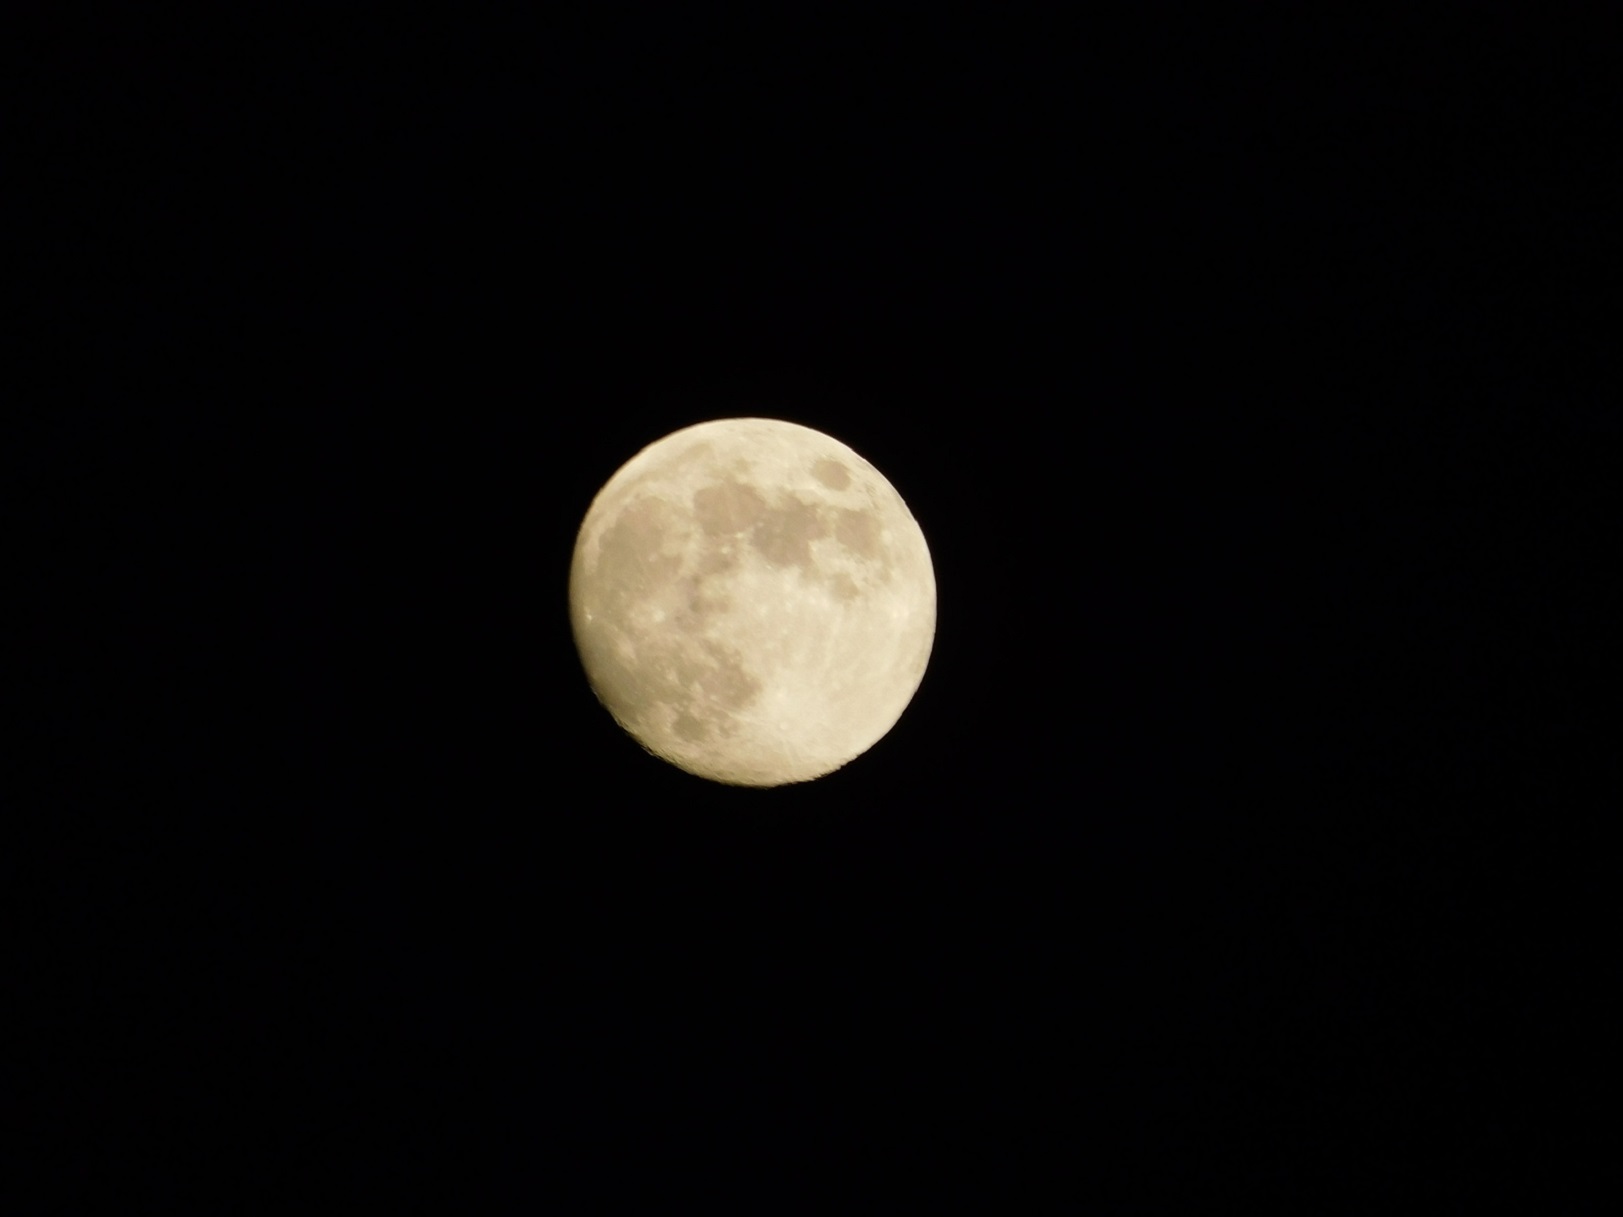 La Pleine Lune est le meilleur moment pour observer les systèmes rayonnants autour de grands cratères d'impact comme Tycho et Copernic. © Paolo, Fotolia